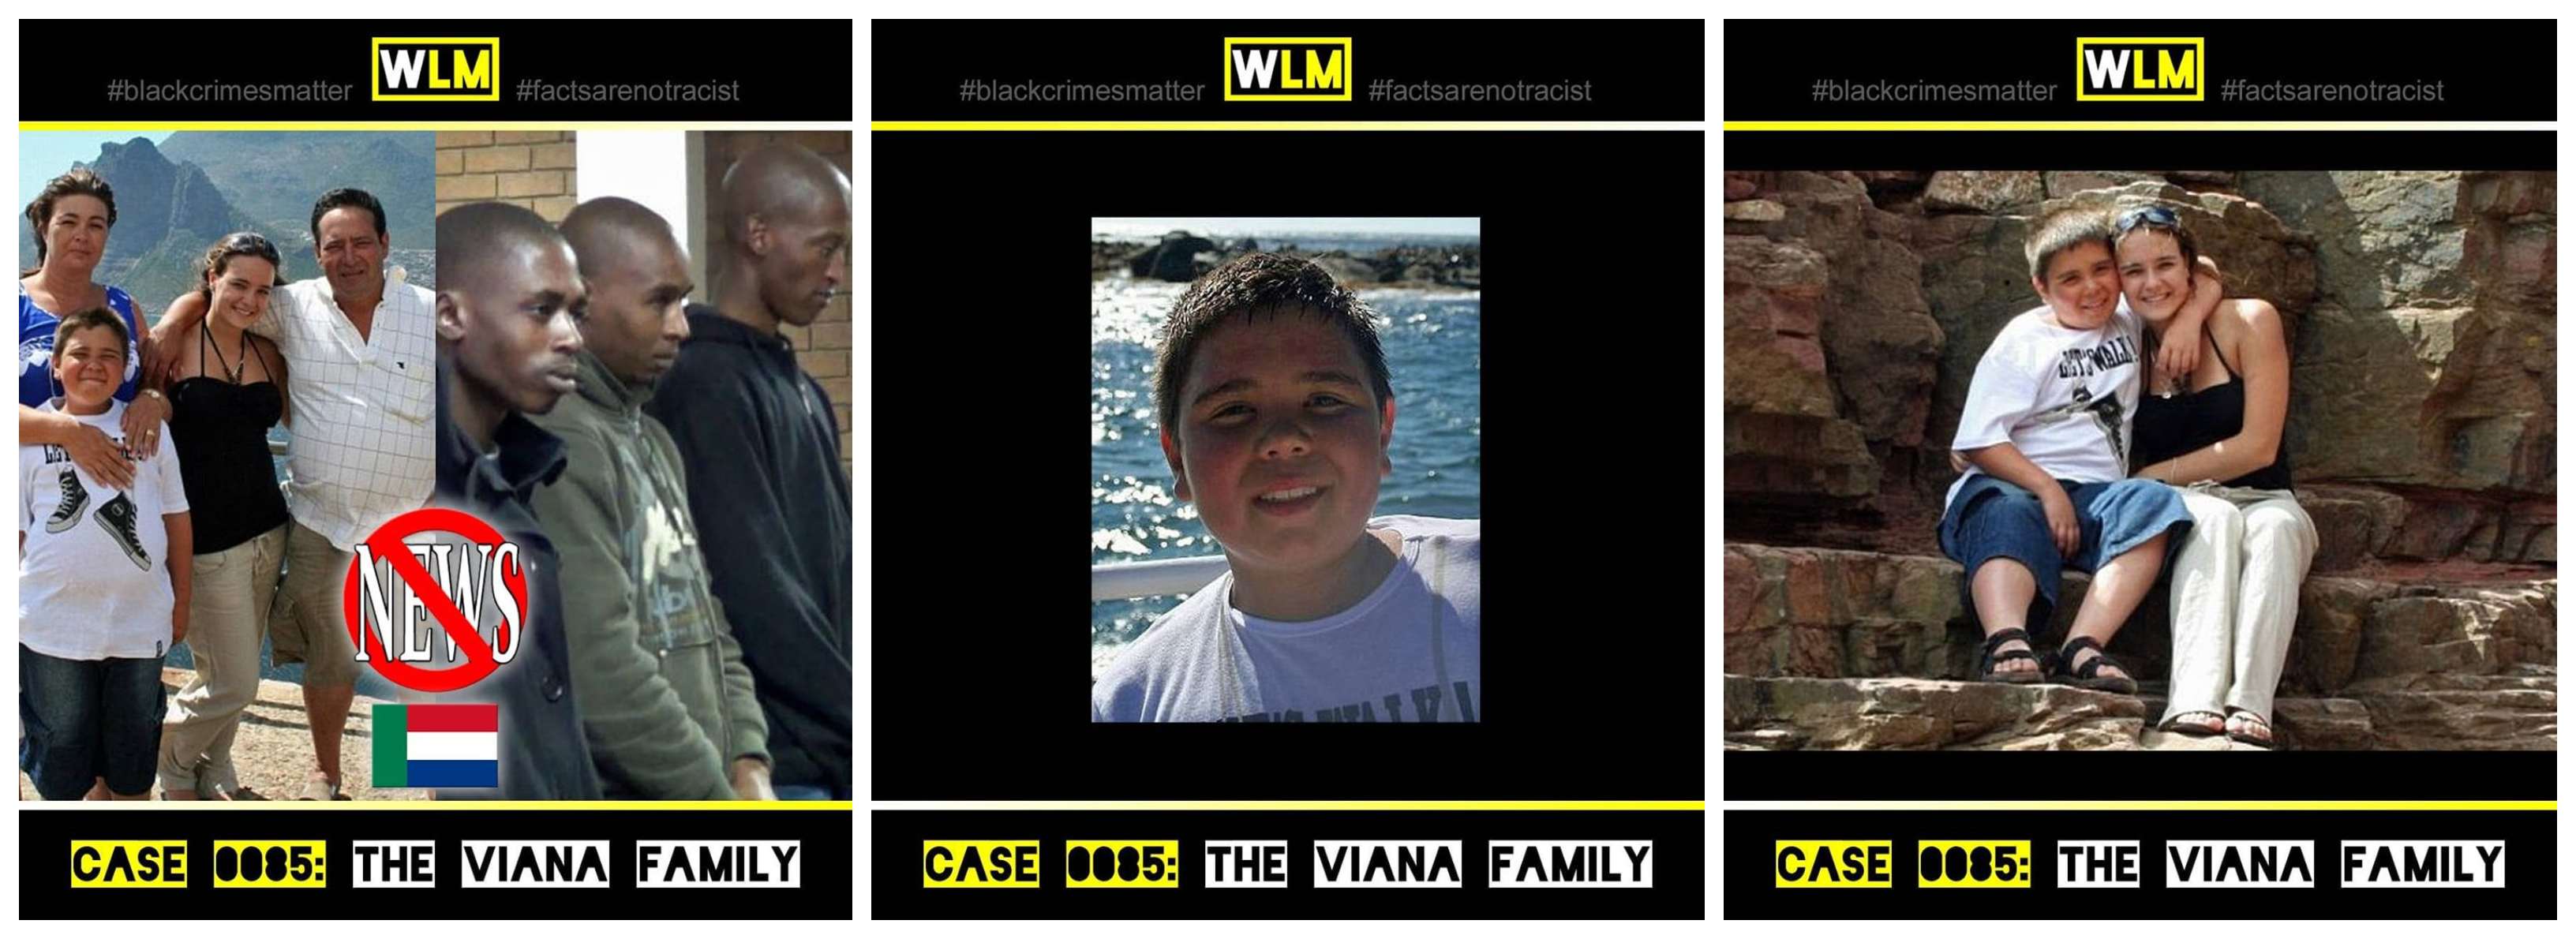 case-085-the-viana-family